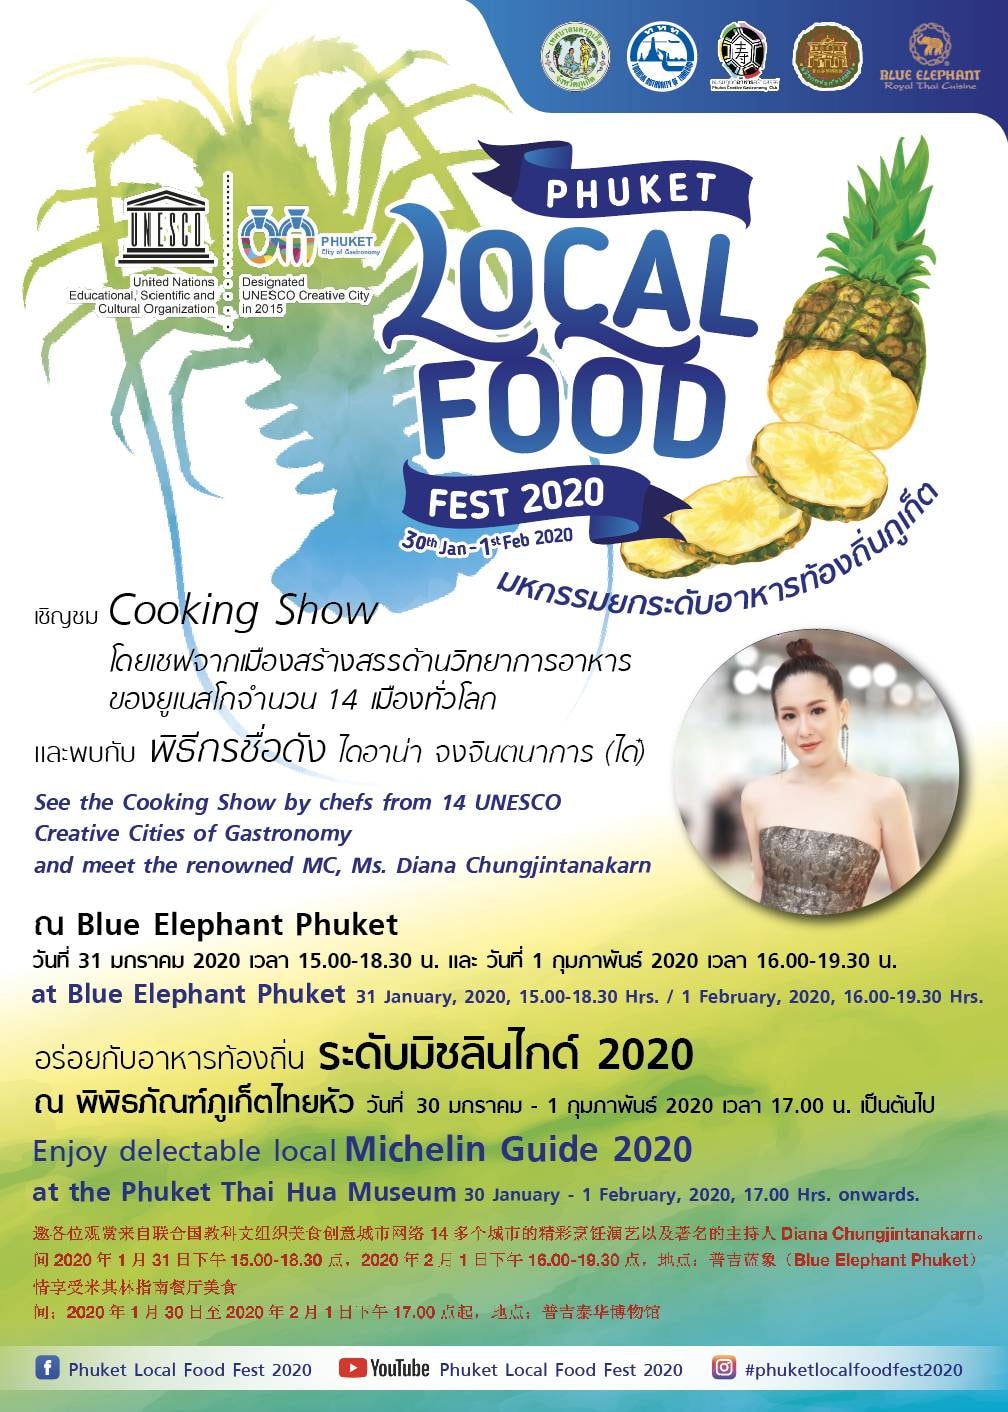 เทศบาลนครภูเก็ตดึงเชฟจาก 14 ประเทศสมาชิก Creative City of Gastronomy ร่วมโชว์ปรุงอาหารในงาน Phuket Local Food Festival 